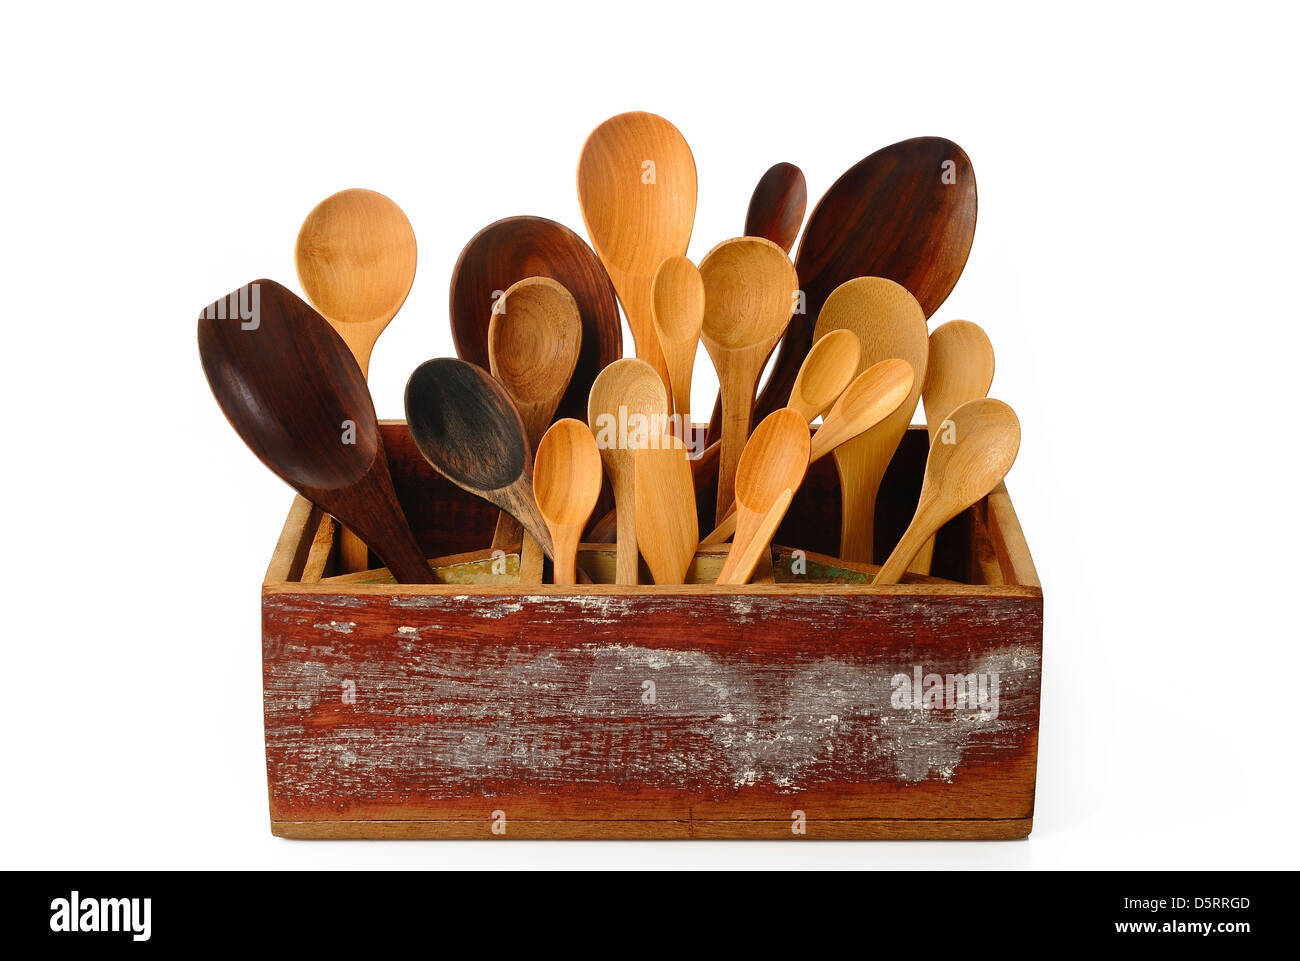 Sammlung von hölzernen Küchenutensilien in Holzkiste Stockfotografie - Alamy